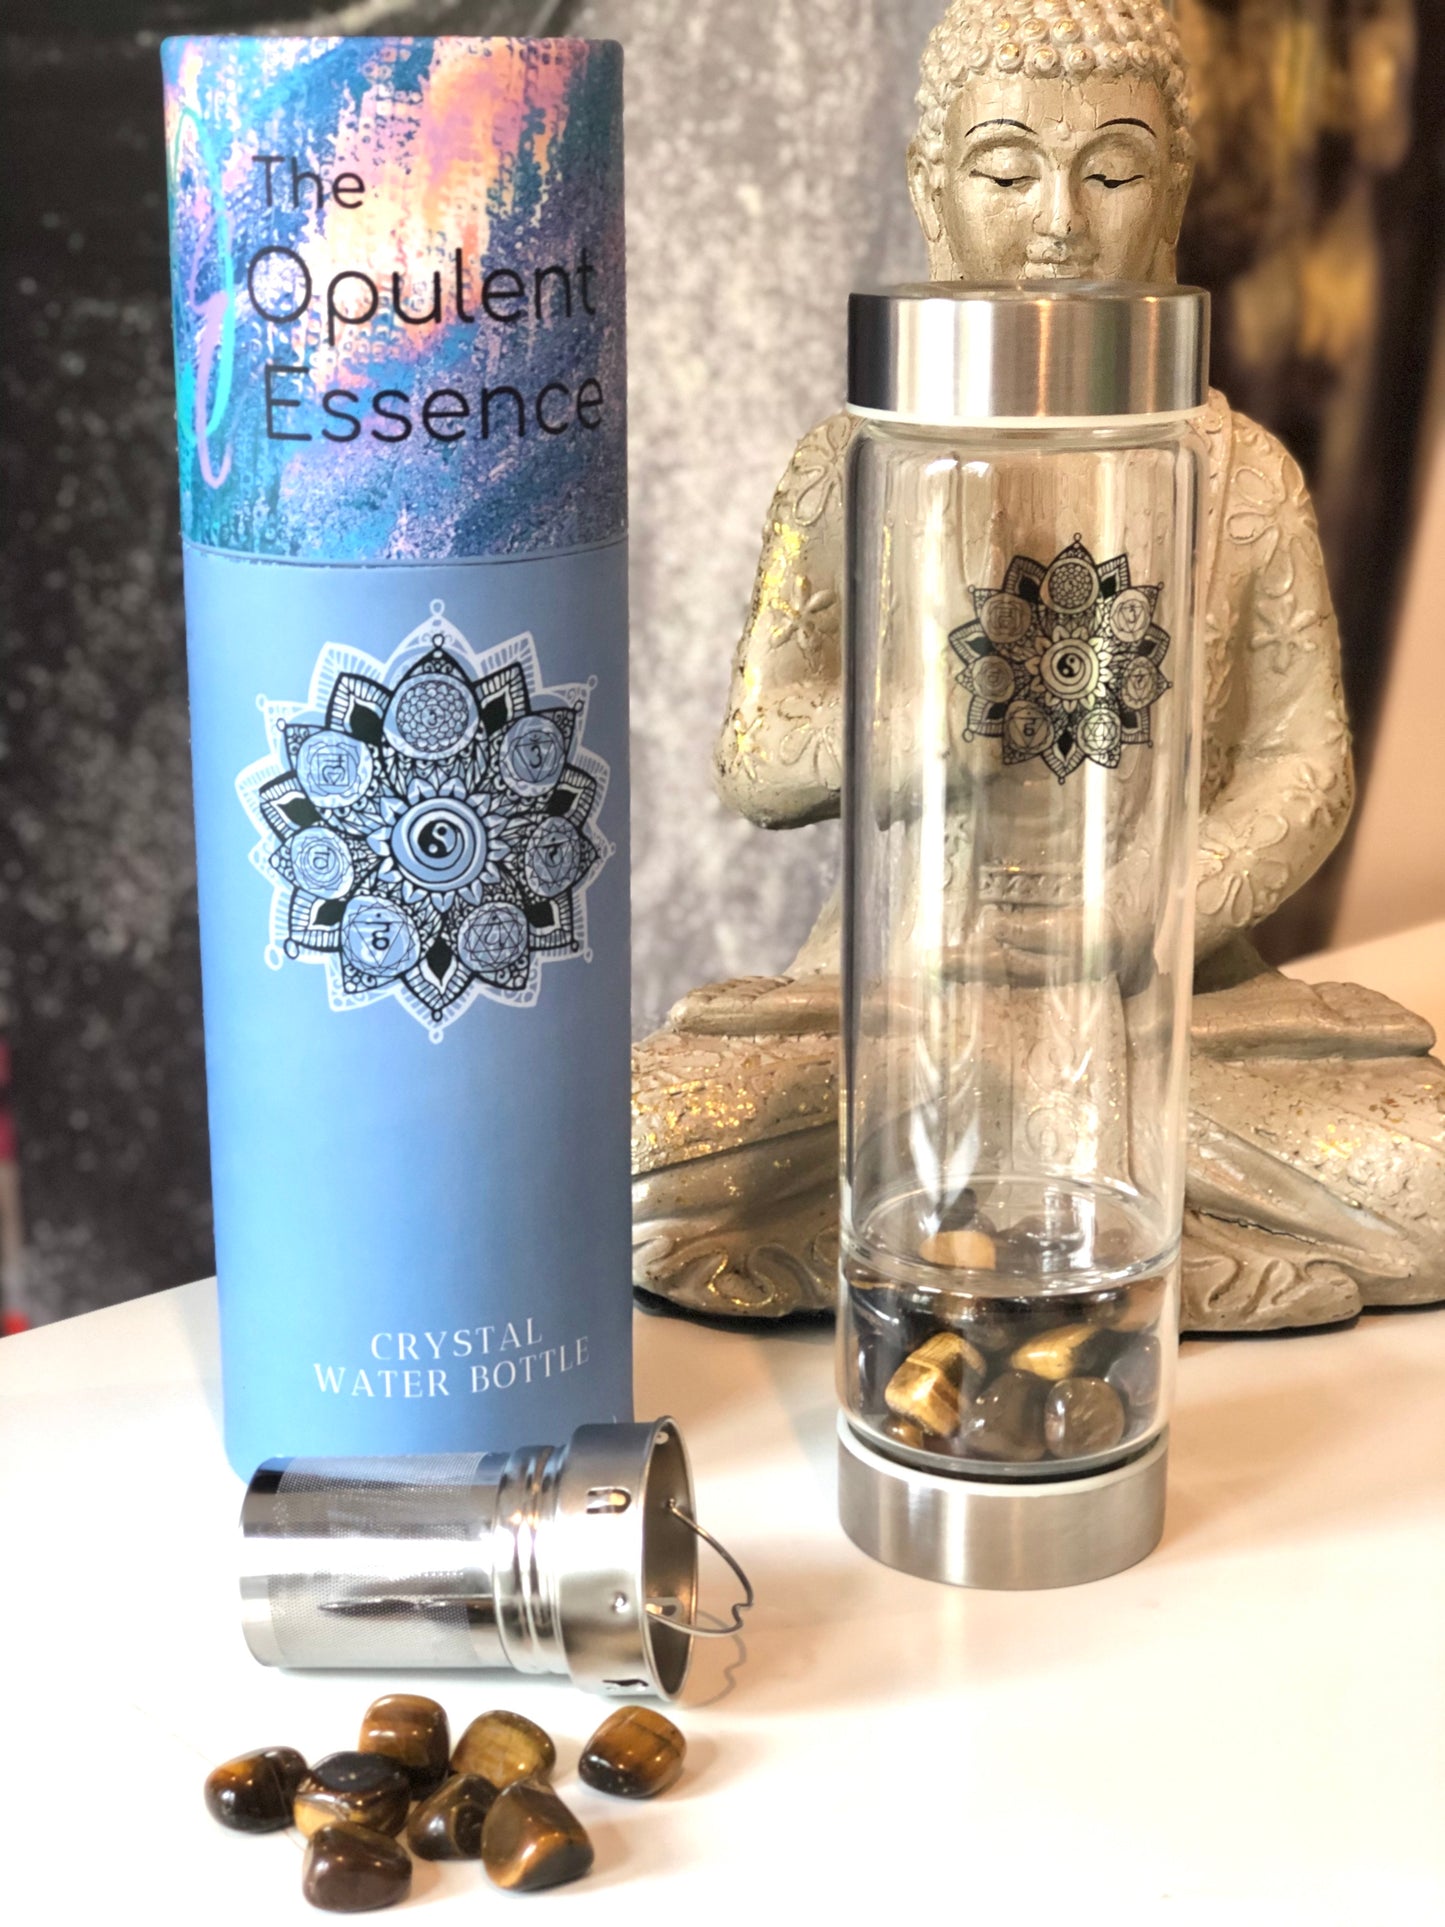 Crystal Water bottle